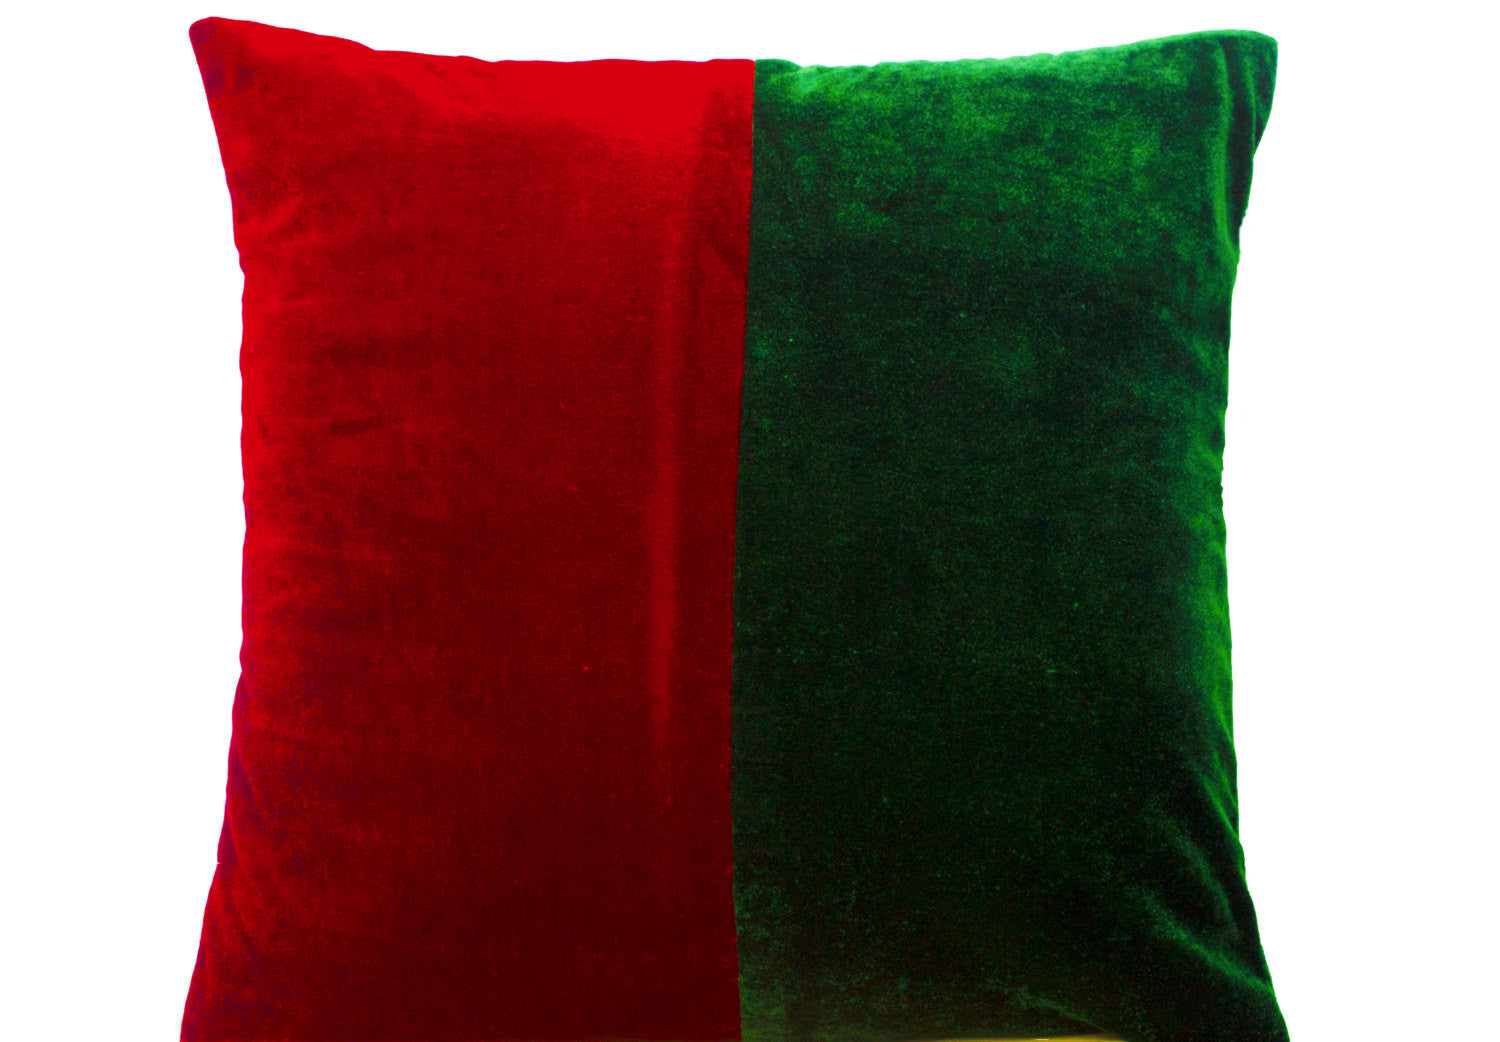 Handmade red green velvet throw pillow case